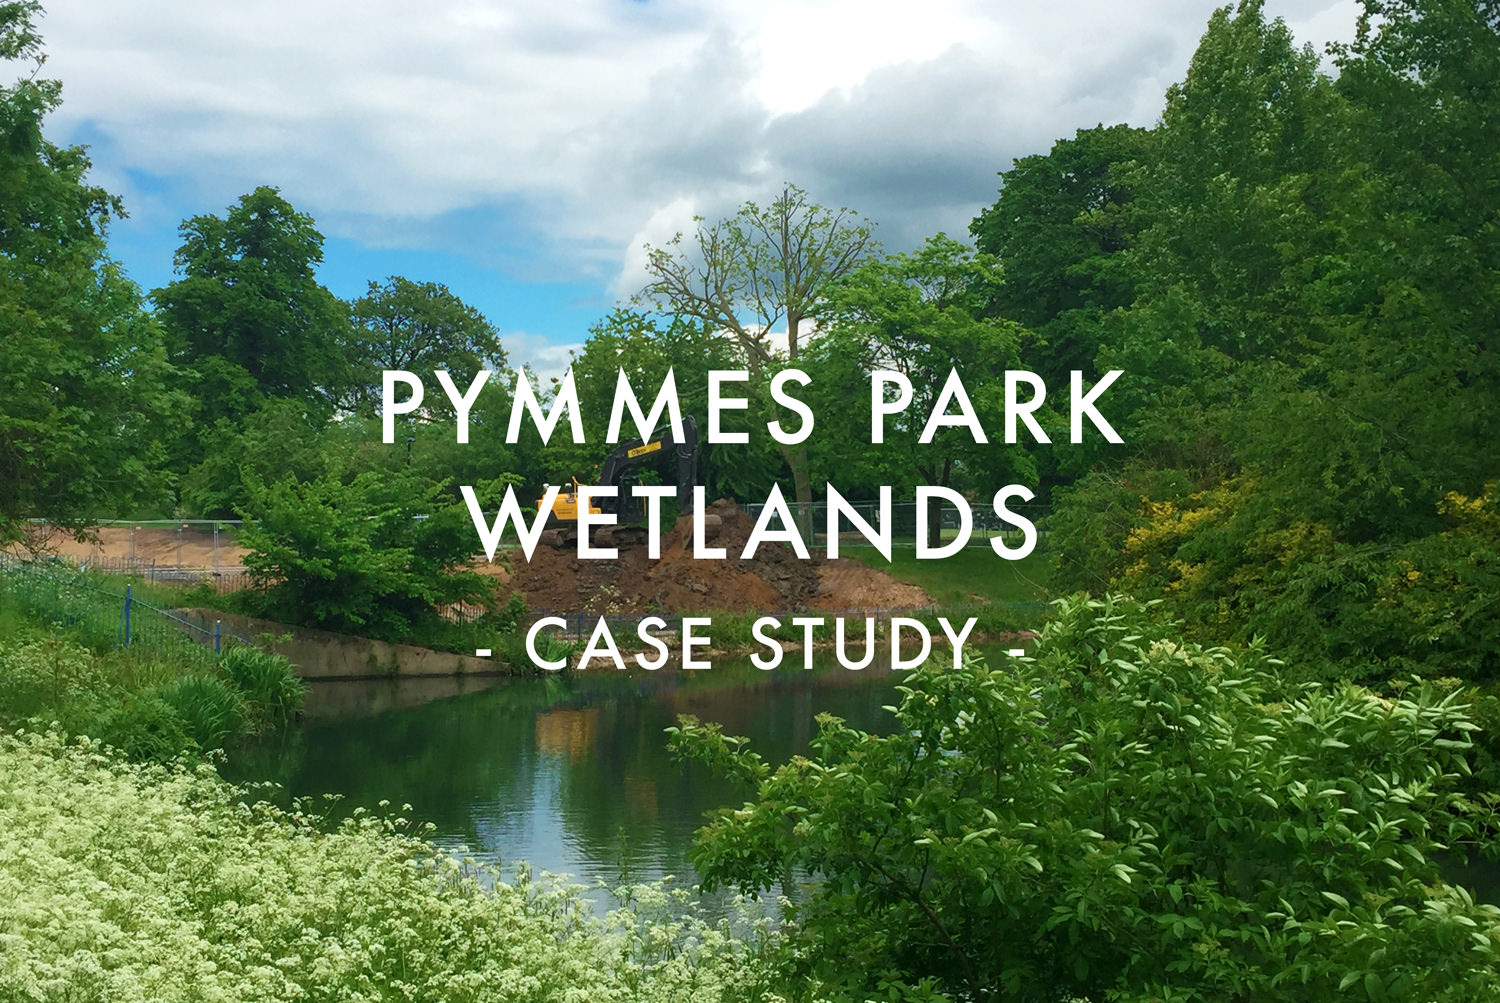 Pymmes Park Wetlands - Case Study